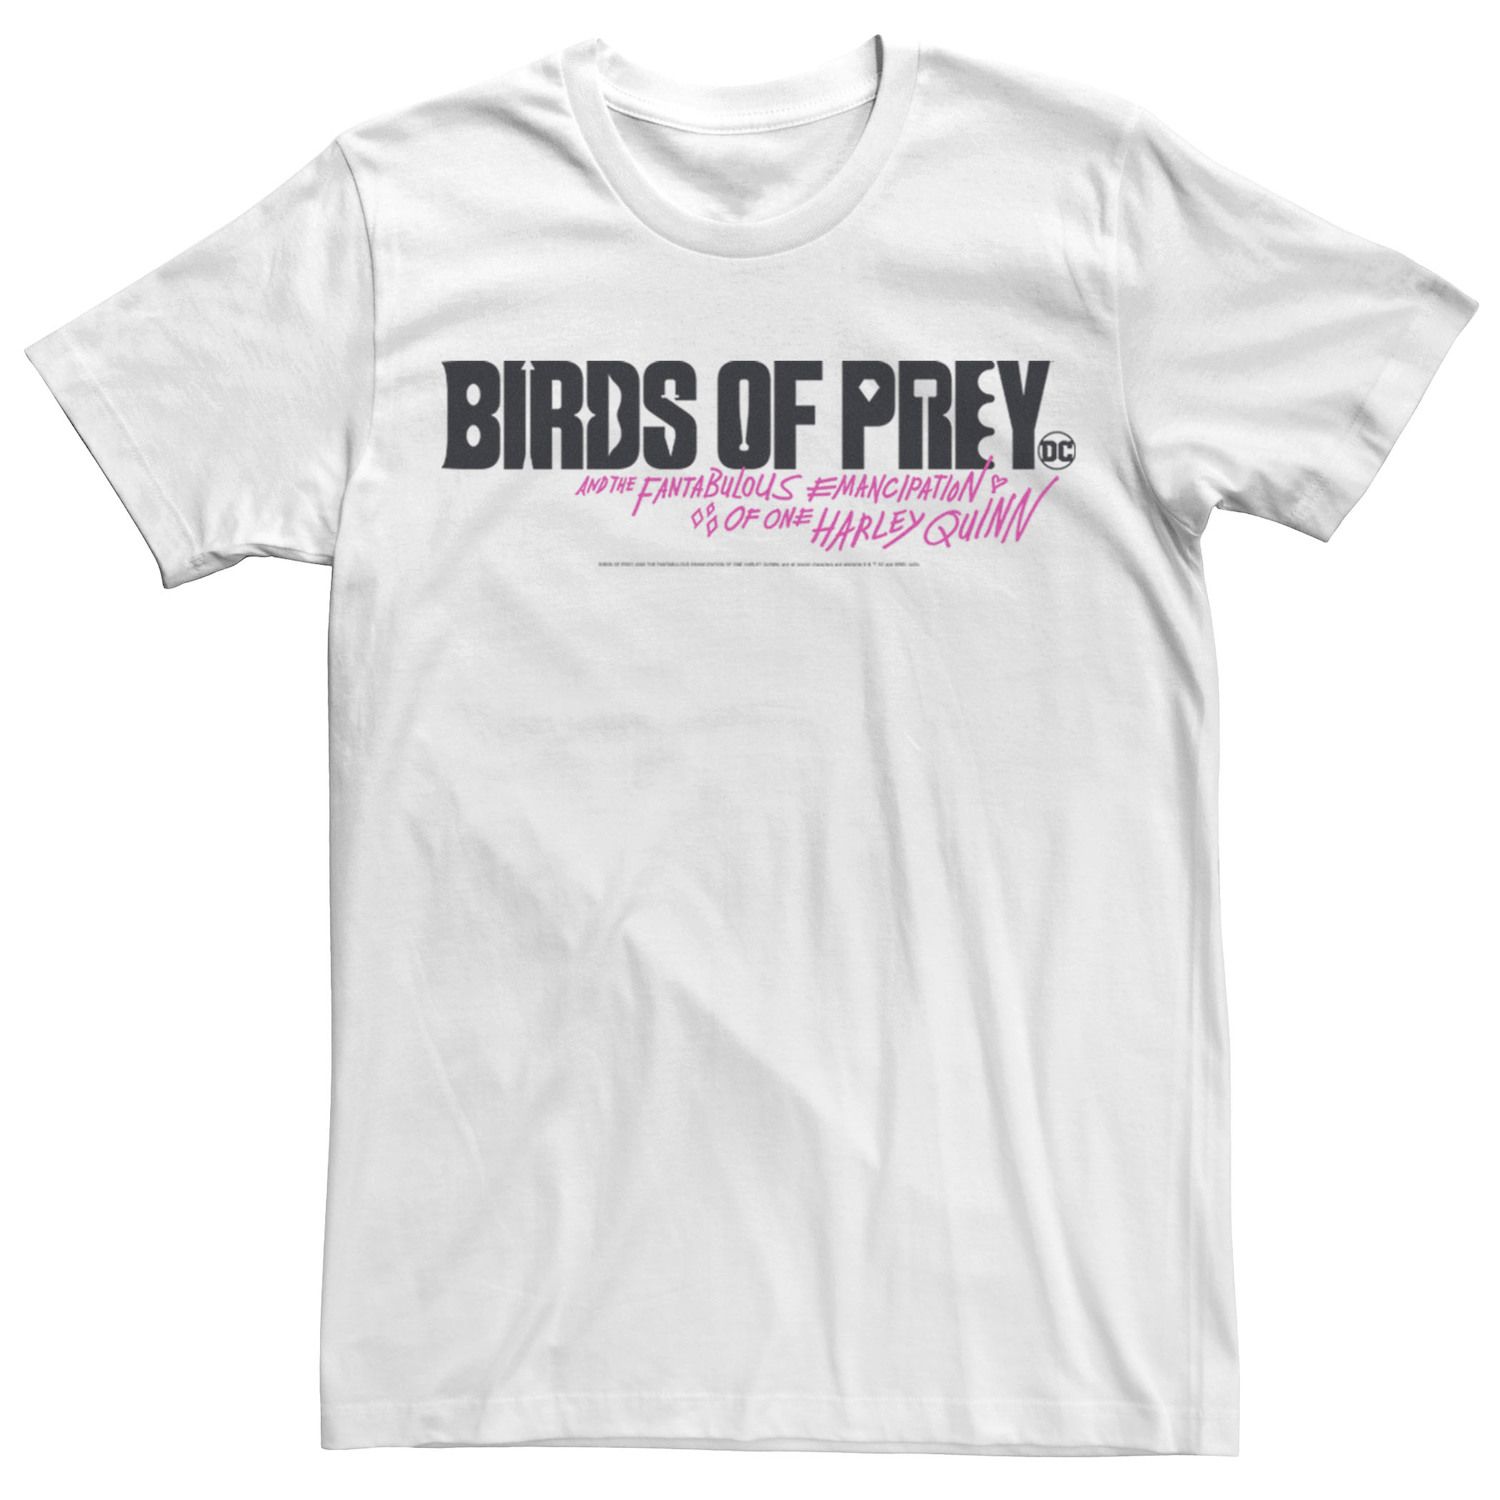 Мужская футболка с надписью «Хищные птицы и фантастическое освобождение Харли Квинн» DC Comics мужская футболка с надписью хищные птицы харли квинн dc comics